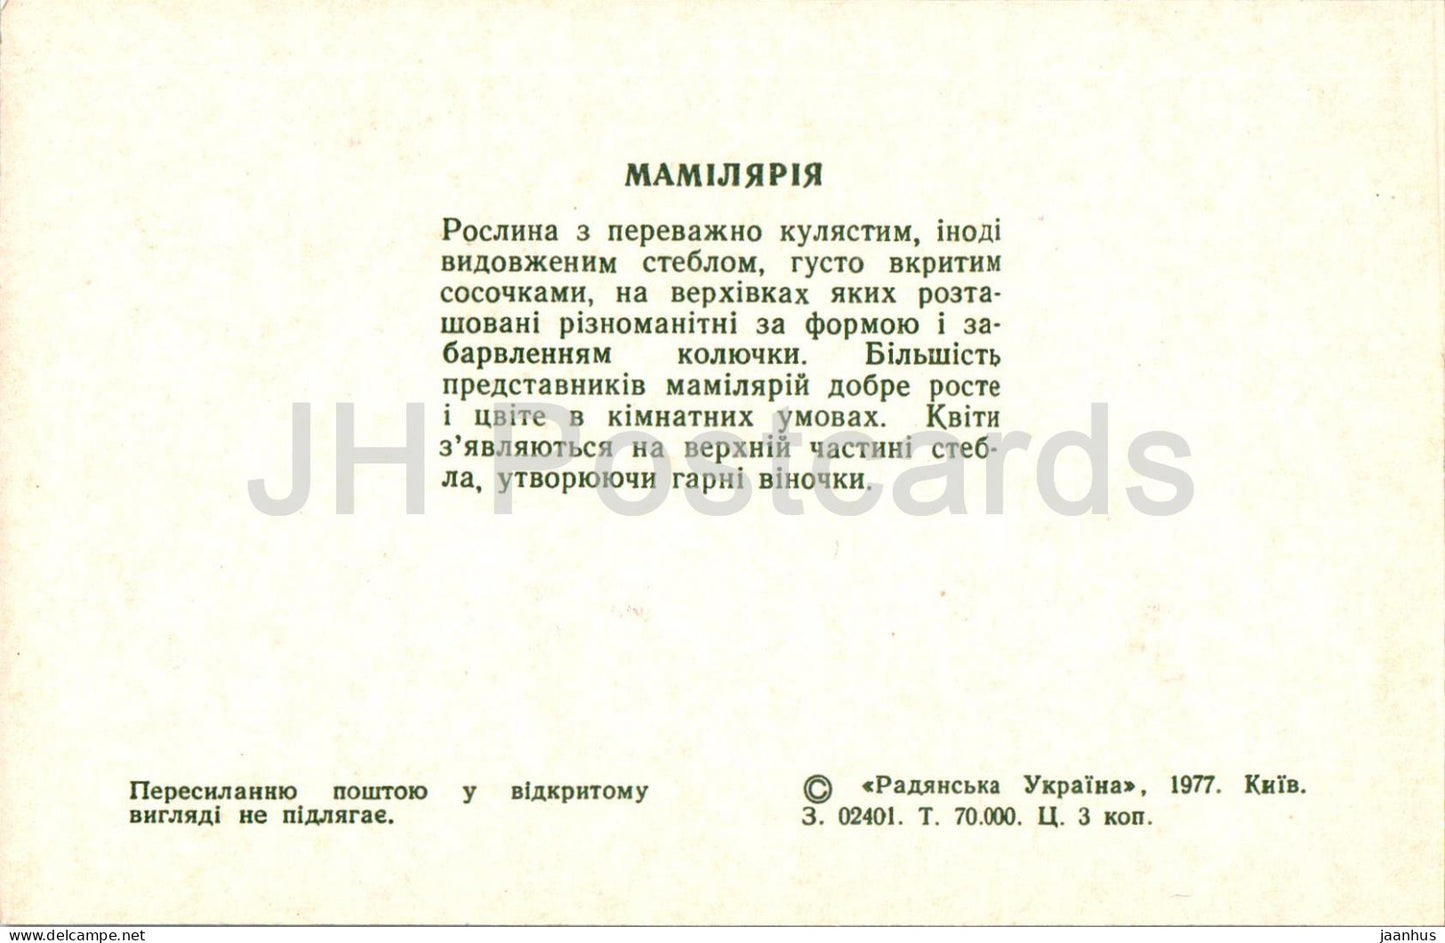 Mammillaria - Kakteen - Kakteen - Blumen - 1977 - Ukraine UdSSR - unbenutzt 